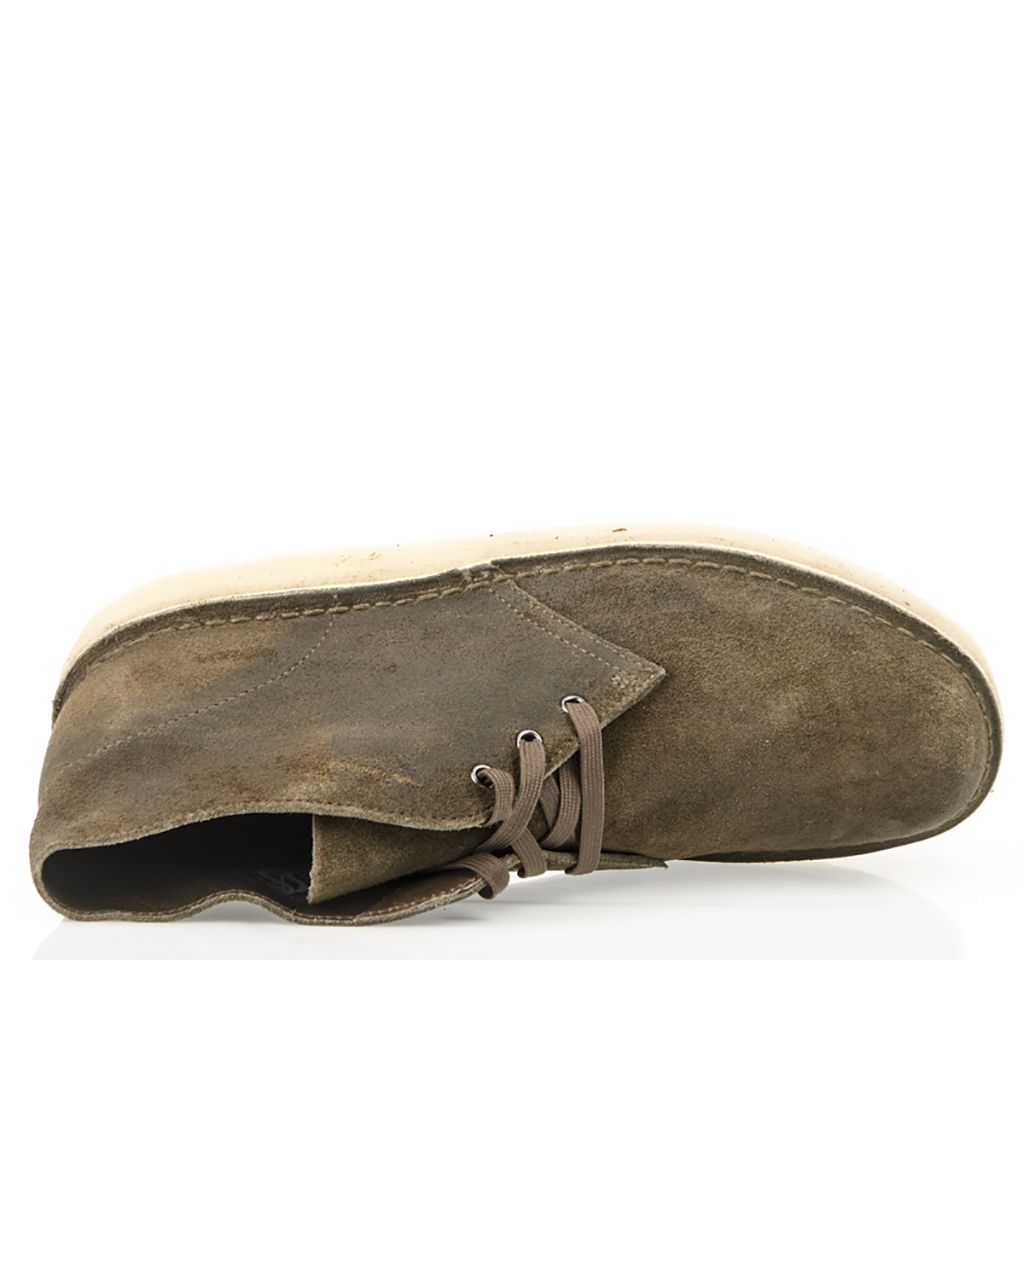 Clarks Desert Coal Casual schoenen Groen 073597-001-41